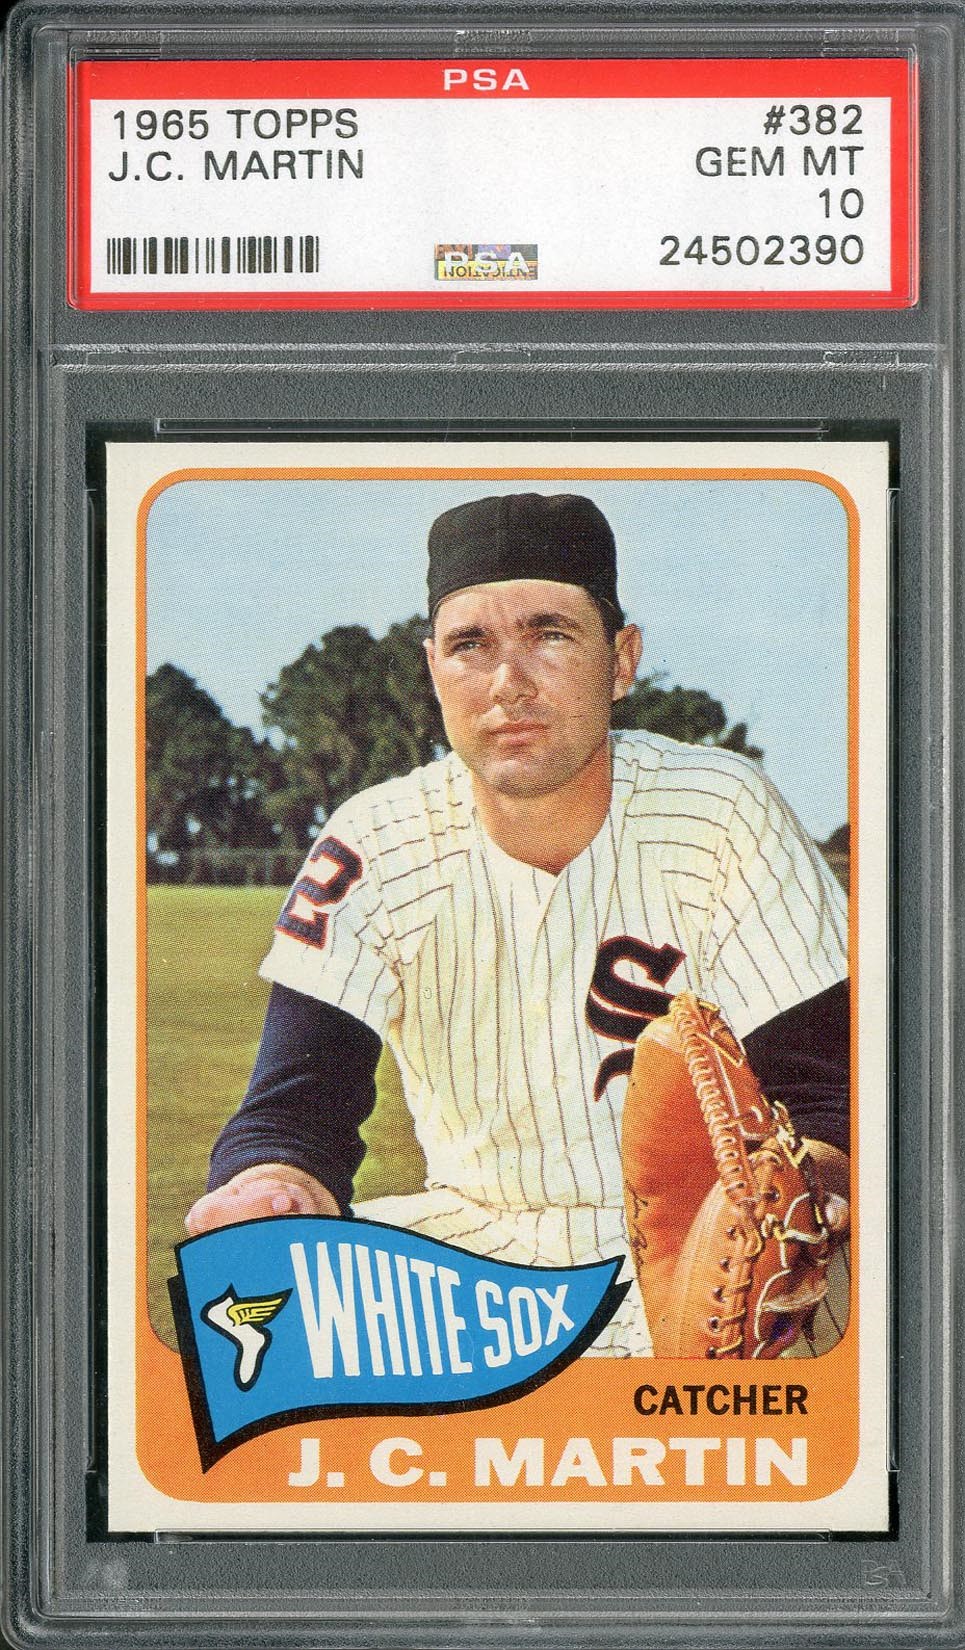 Baseball and Trading Cards - 1965 Topps J.C Martin #382 PSA GEM MT 10